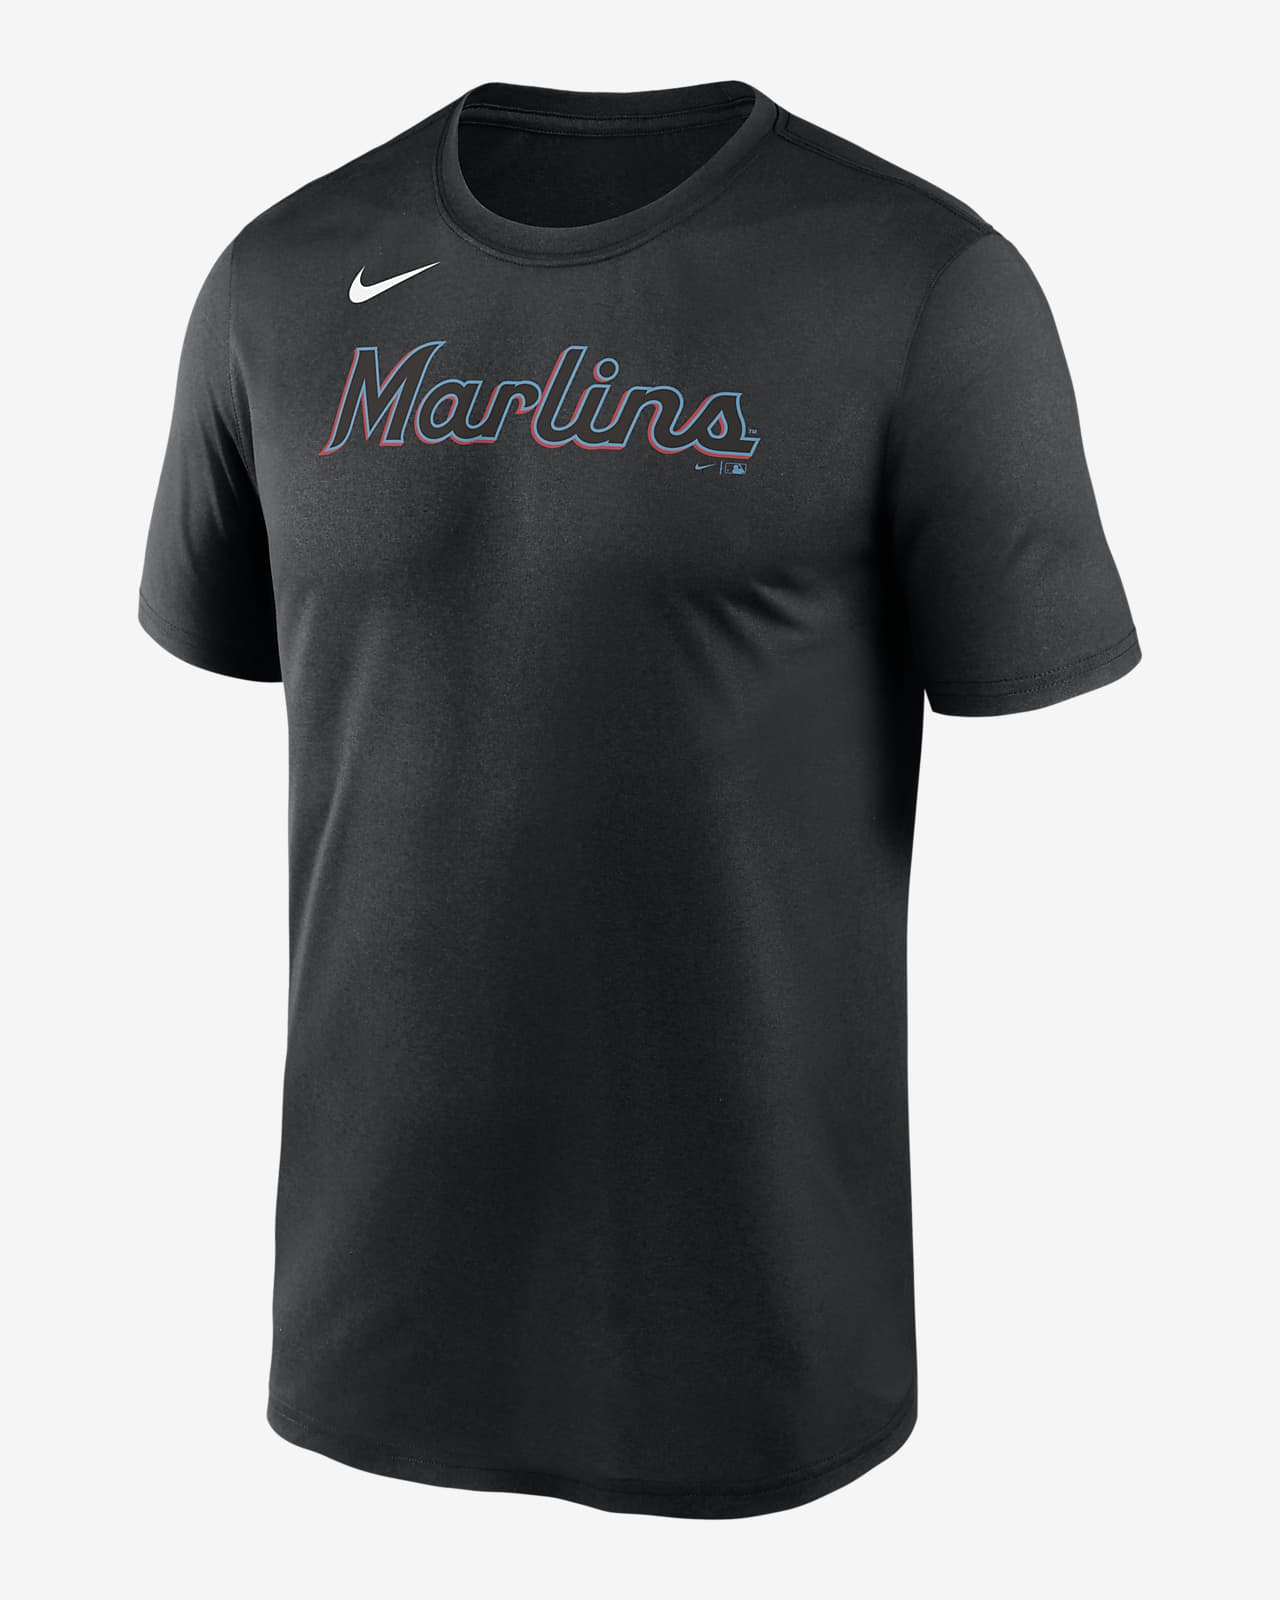 Nike Dri-FIT Legend Wordmark (MLB Miami Marlins) Men's T-Shirt.